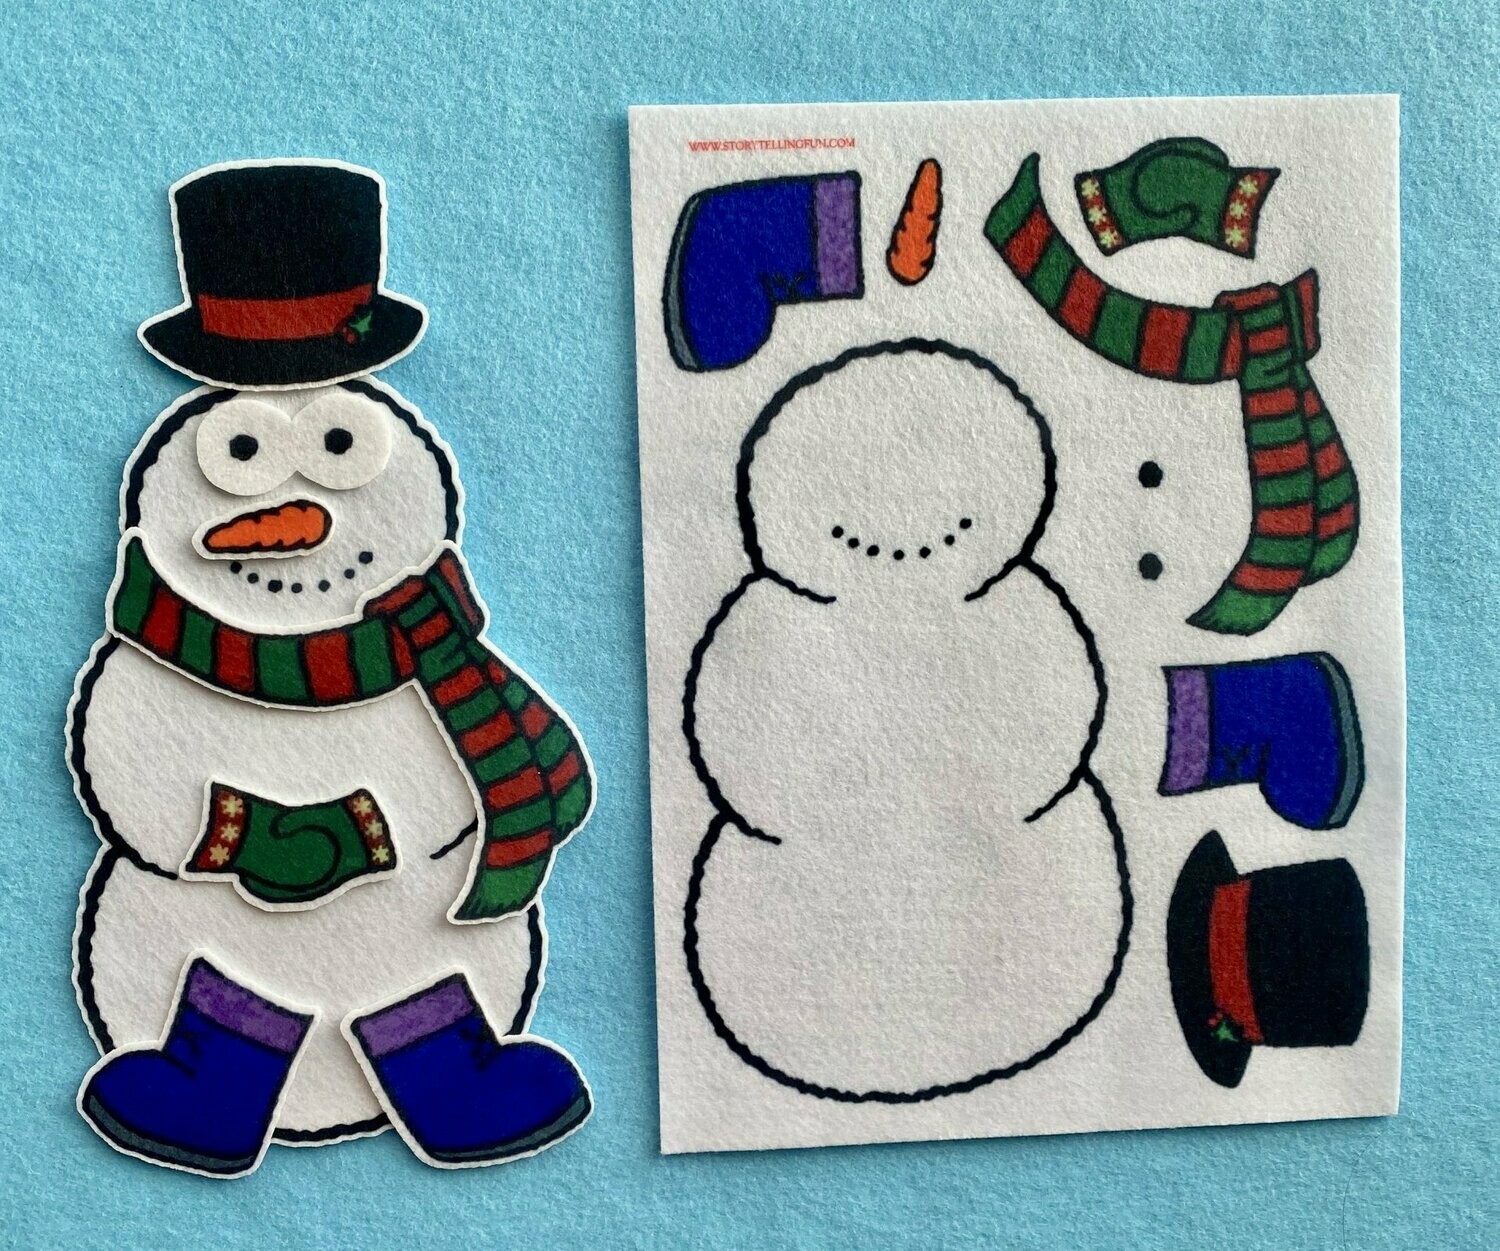 Flannel Board Fun: Build a Snowman